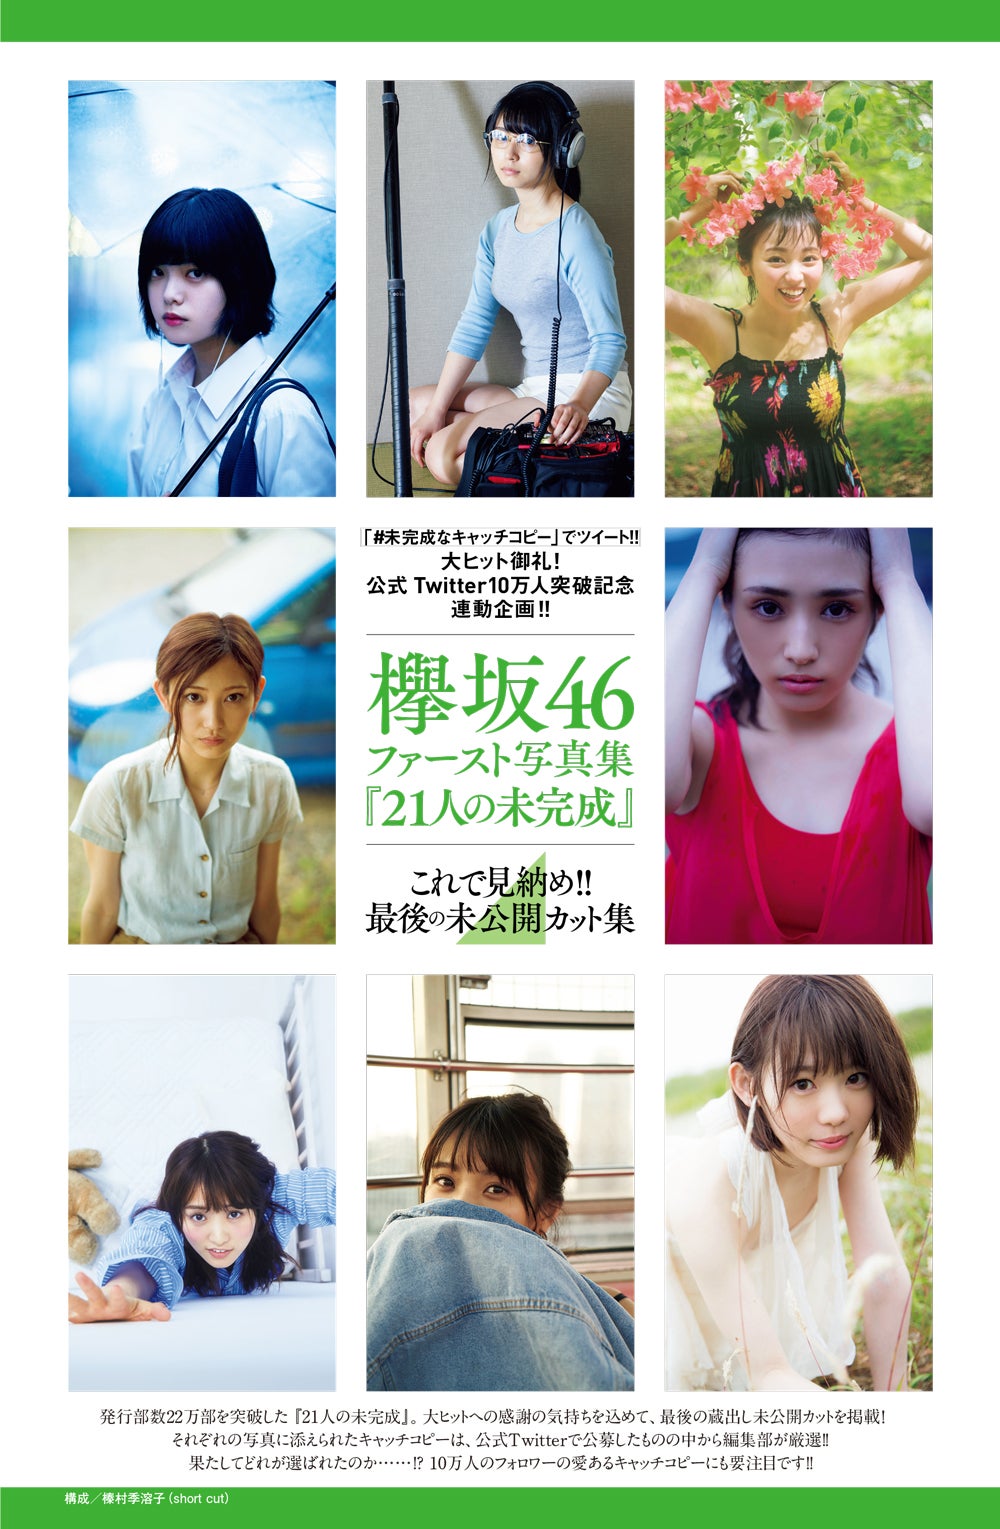 欅坂46写真集「21人の未完成」最後の未公開カット公開 - モデル 